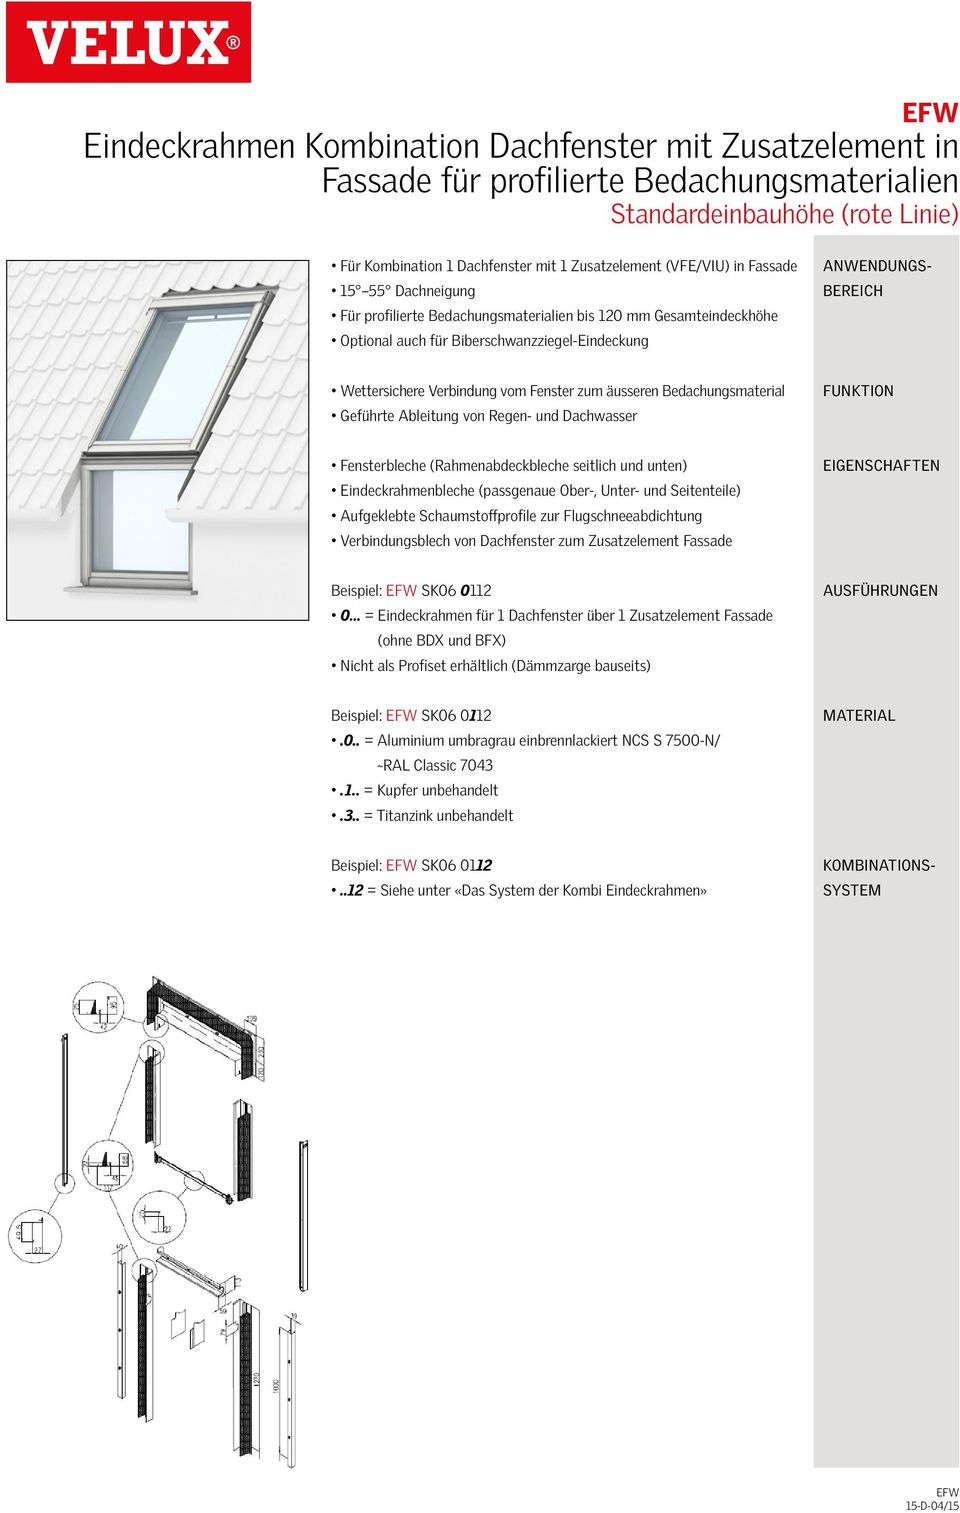 Flugschneeabdichtung Verbindungsblech von Dachfenster zum Zusatzelement Fassade Beispiel: EFW SK06 0112 0 = Eindeckrahmen für 1 Dachfenster über 1 Zusatzelement Fassade (ohne BDX